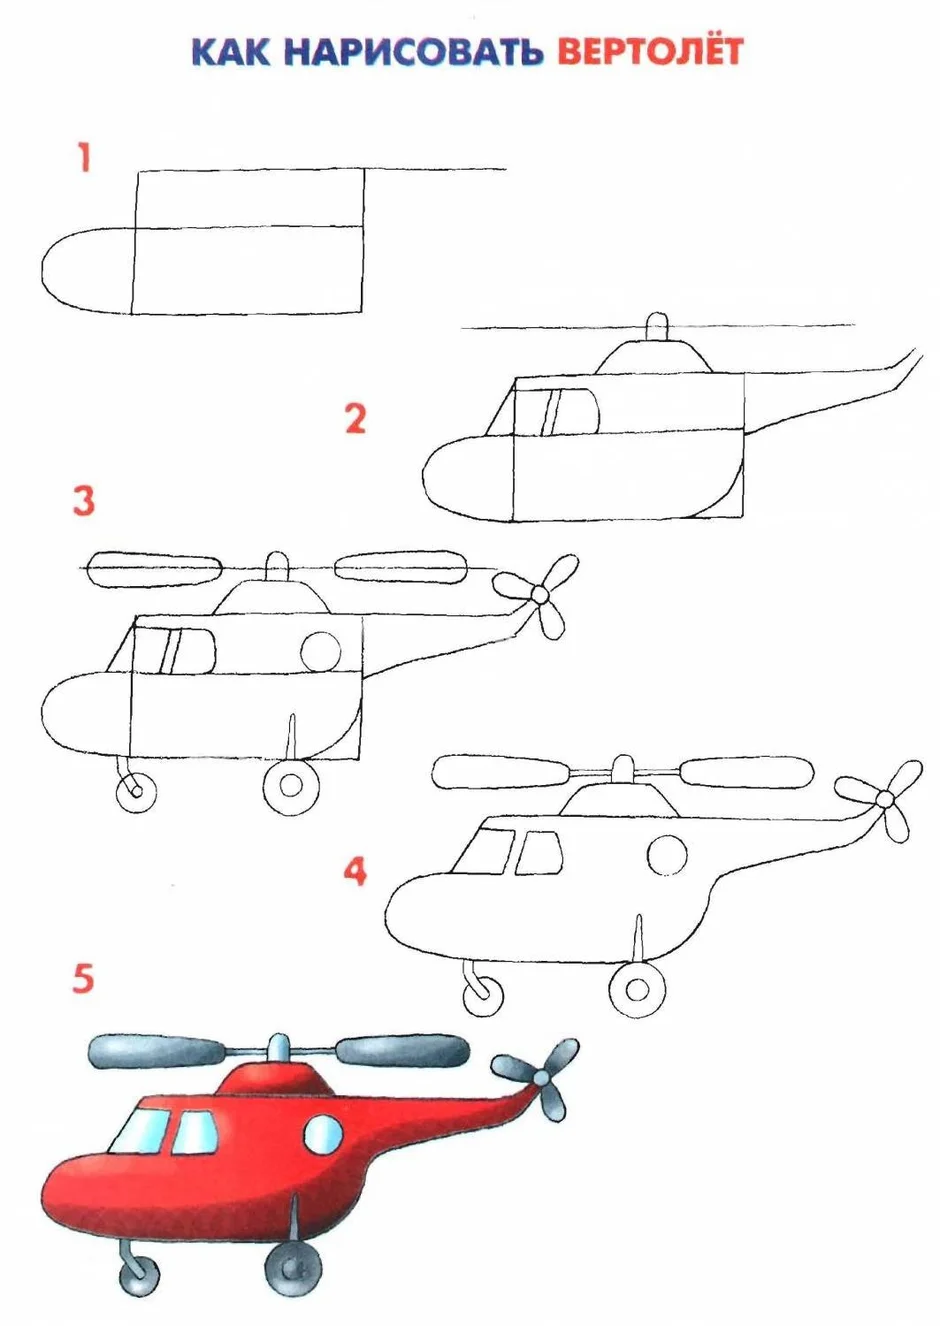 Как нарисовать вертолет | Рисунок вертолета поэтапно карандашом